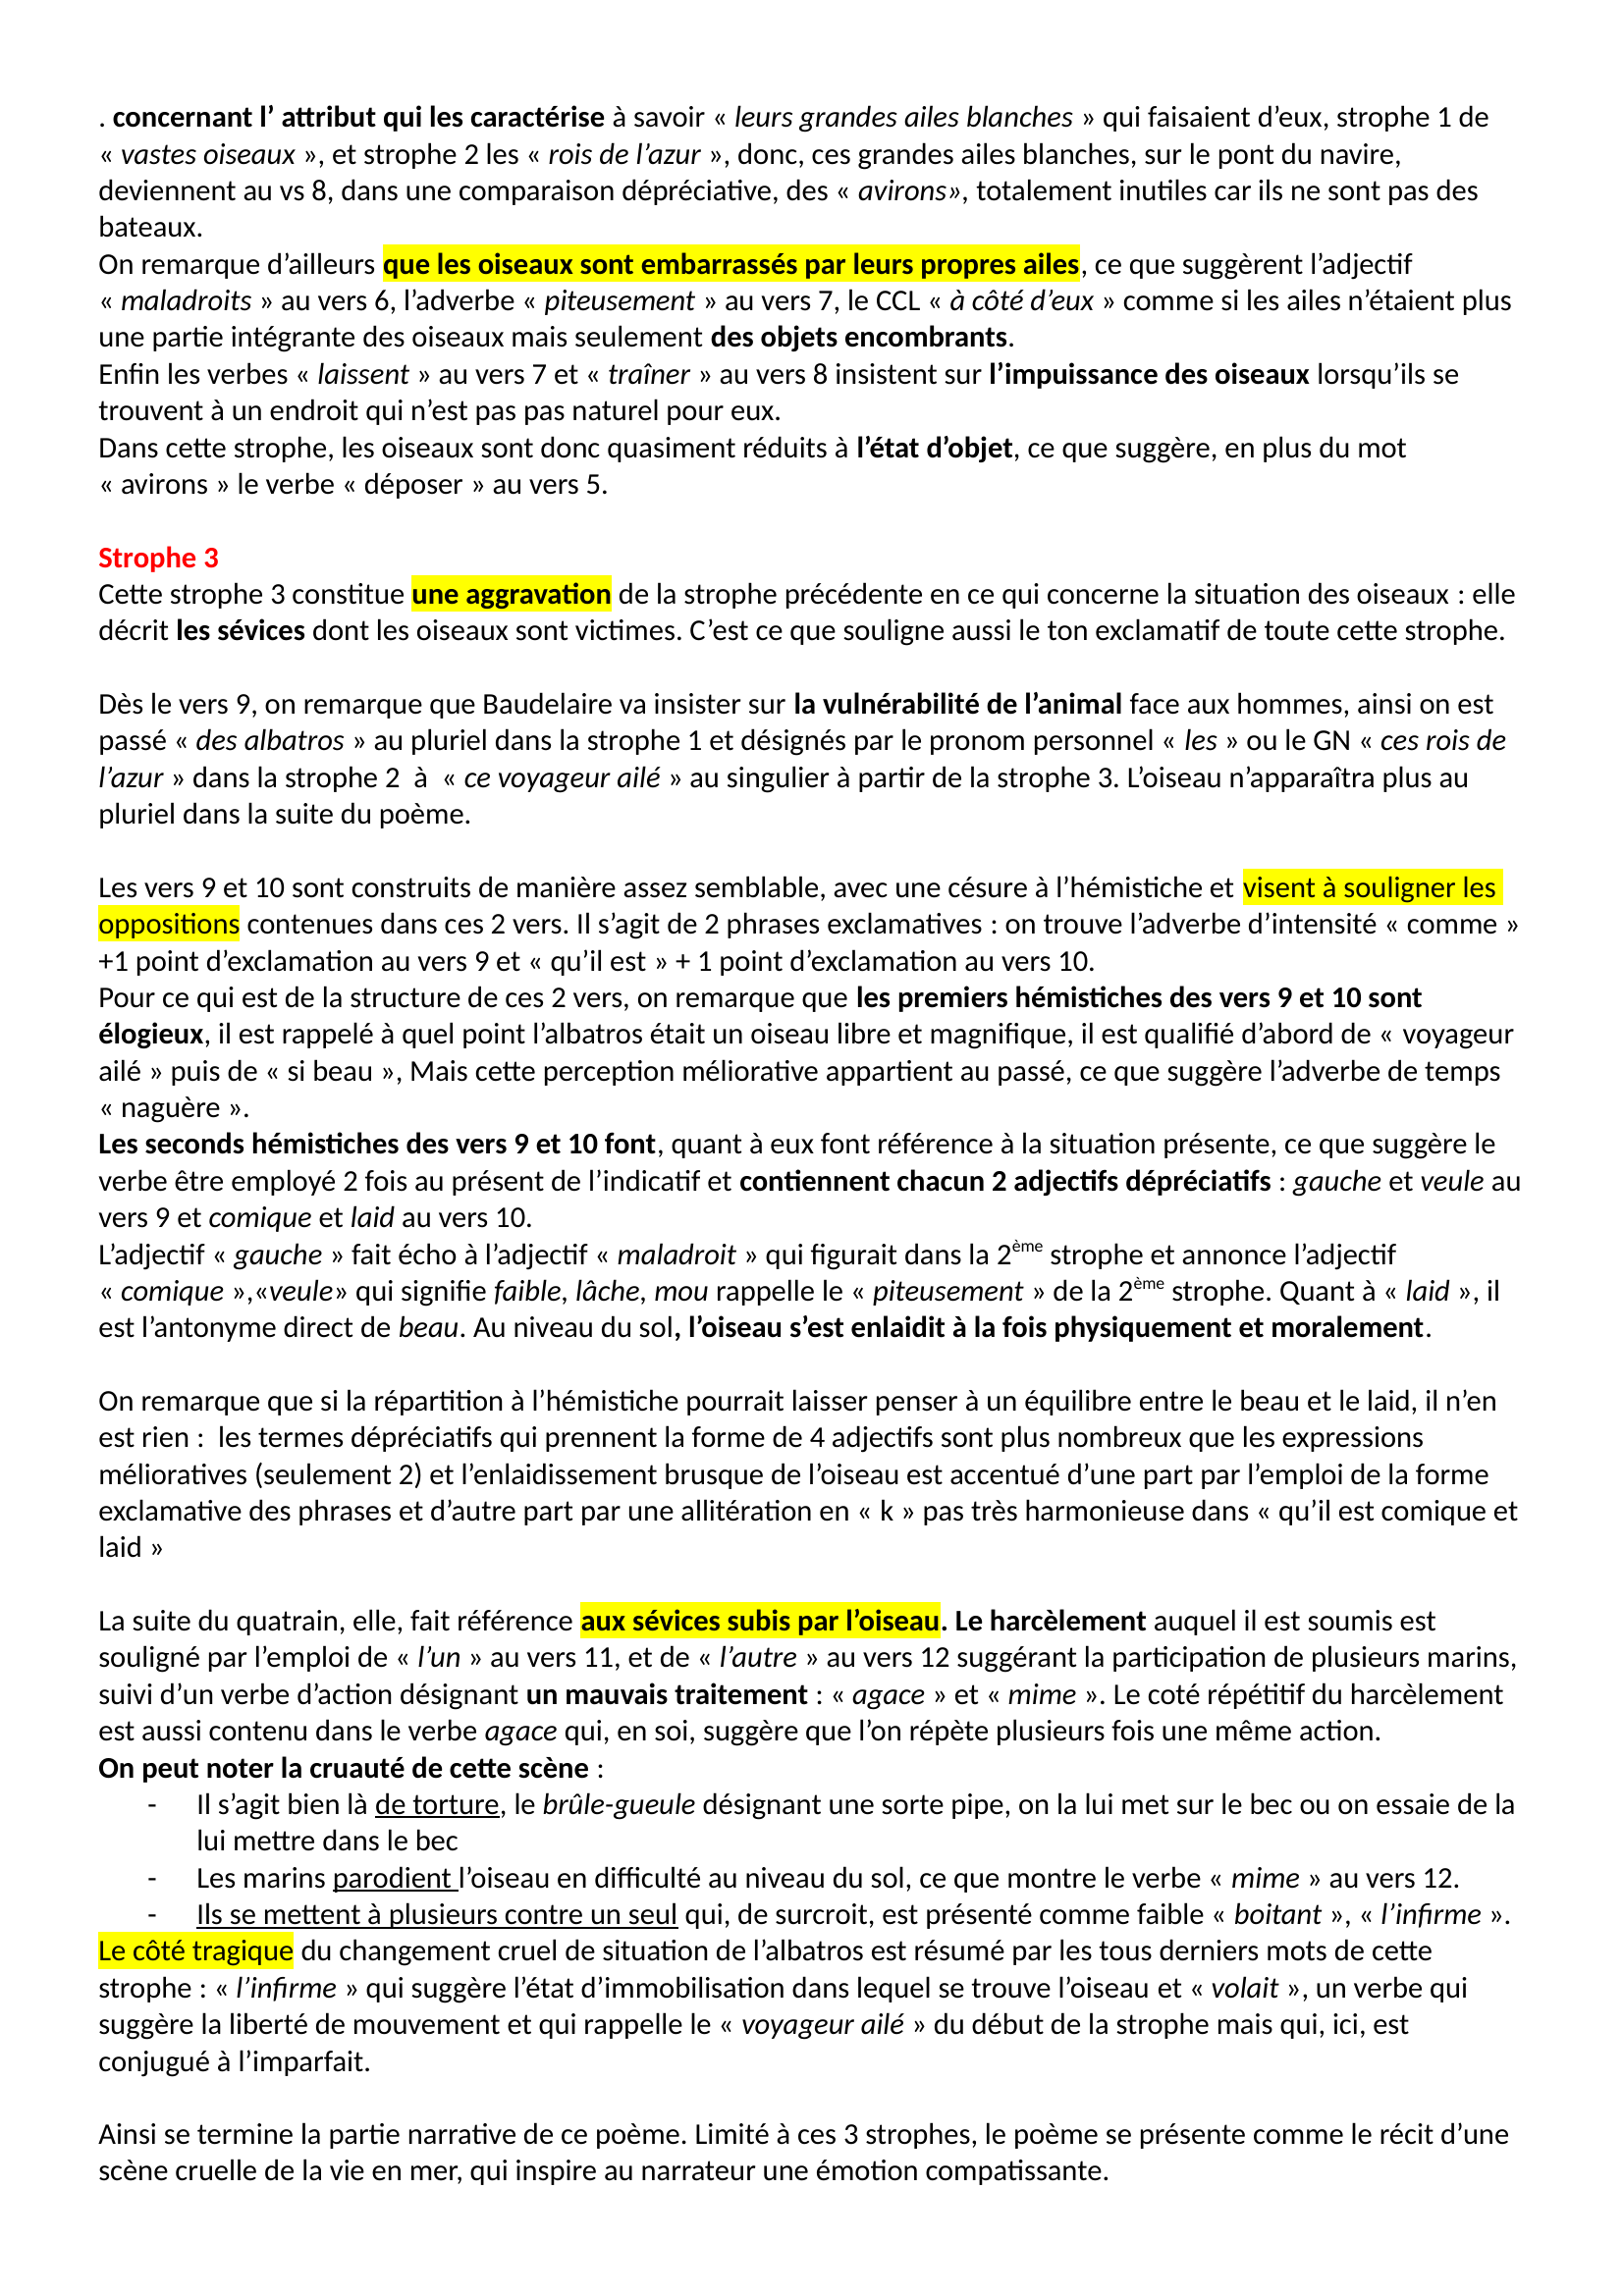 Prévisualisation du document « L’Albatros » de Baudelaire, explication linéaire